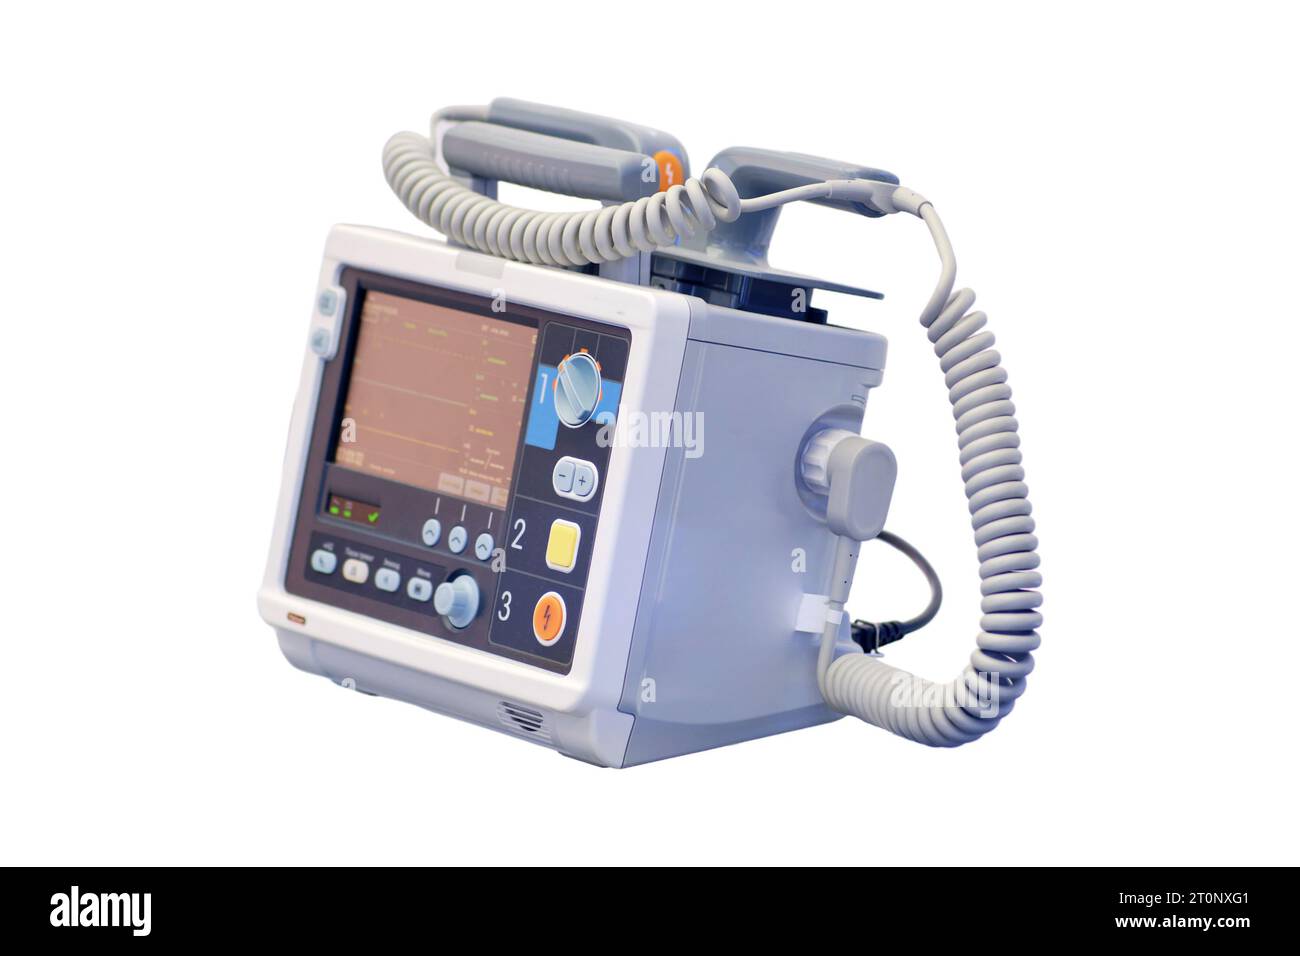 Défibrillateur cardio portable, équipement médical en salle d'opération, isolé sur fond blanc Banque D'Images